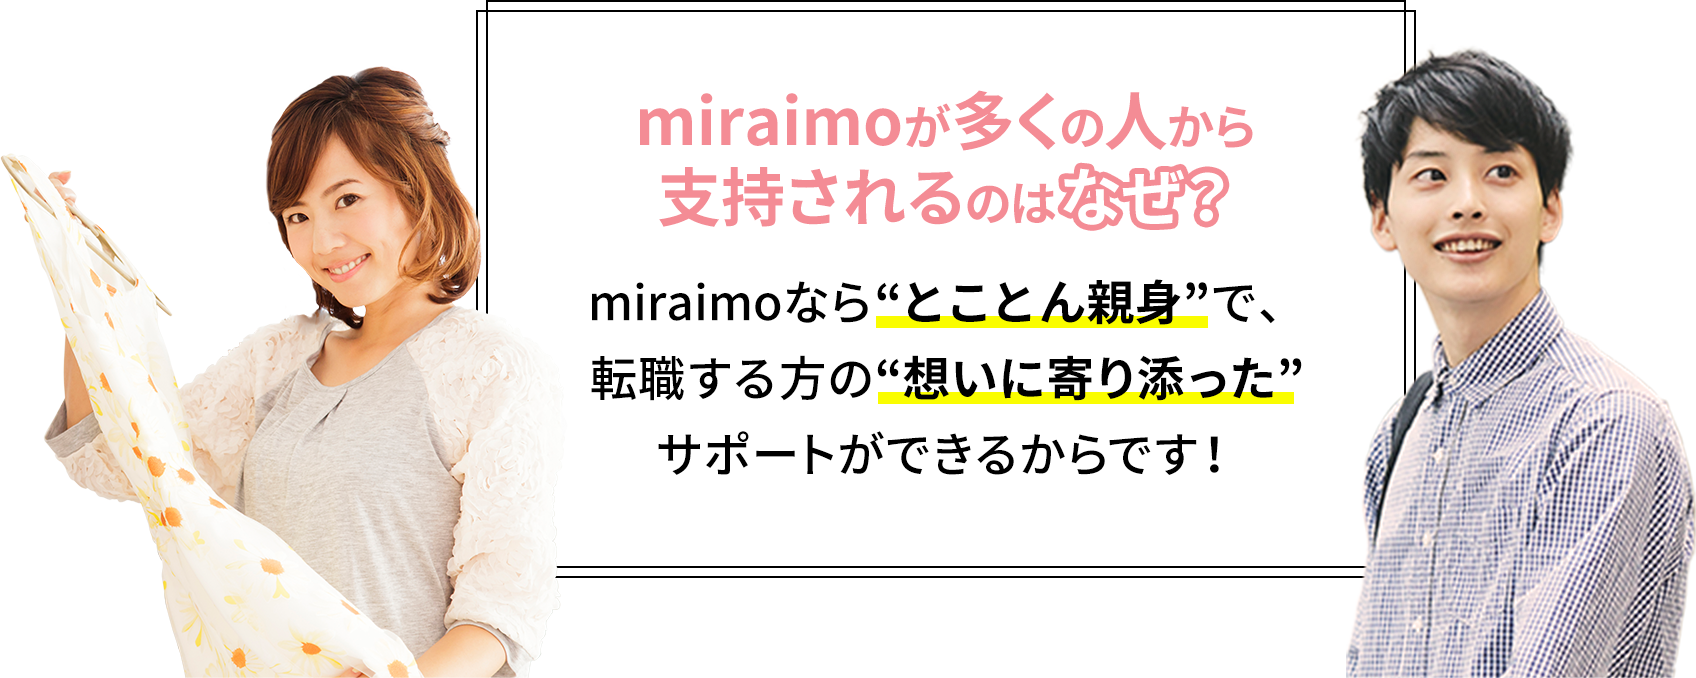 miraimoが多くの人から支持されるのはなぜ？ miraimoなら“とことん親身”で、転職する方の“想いに寄り添った”サポートができるからです！